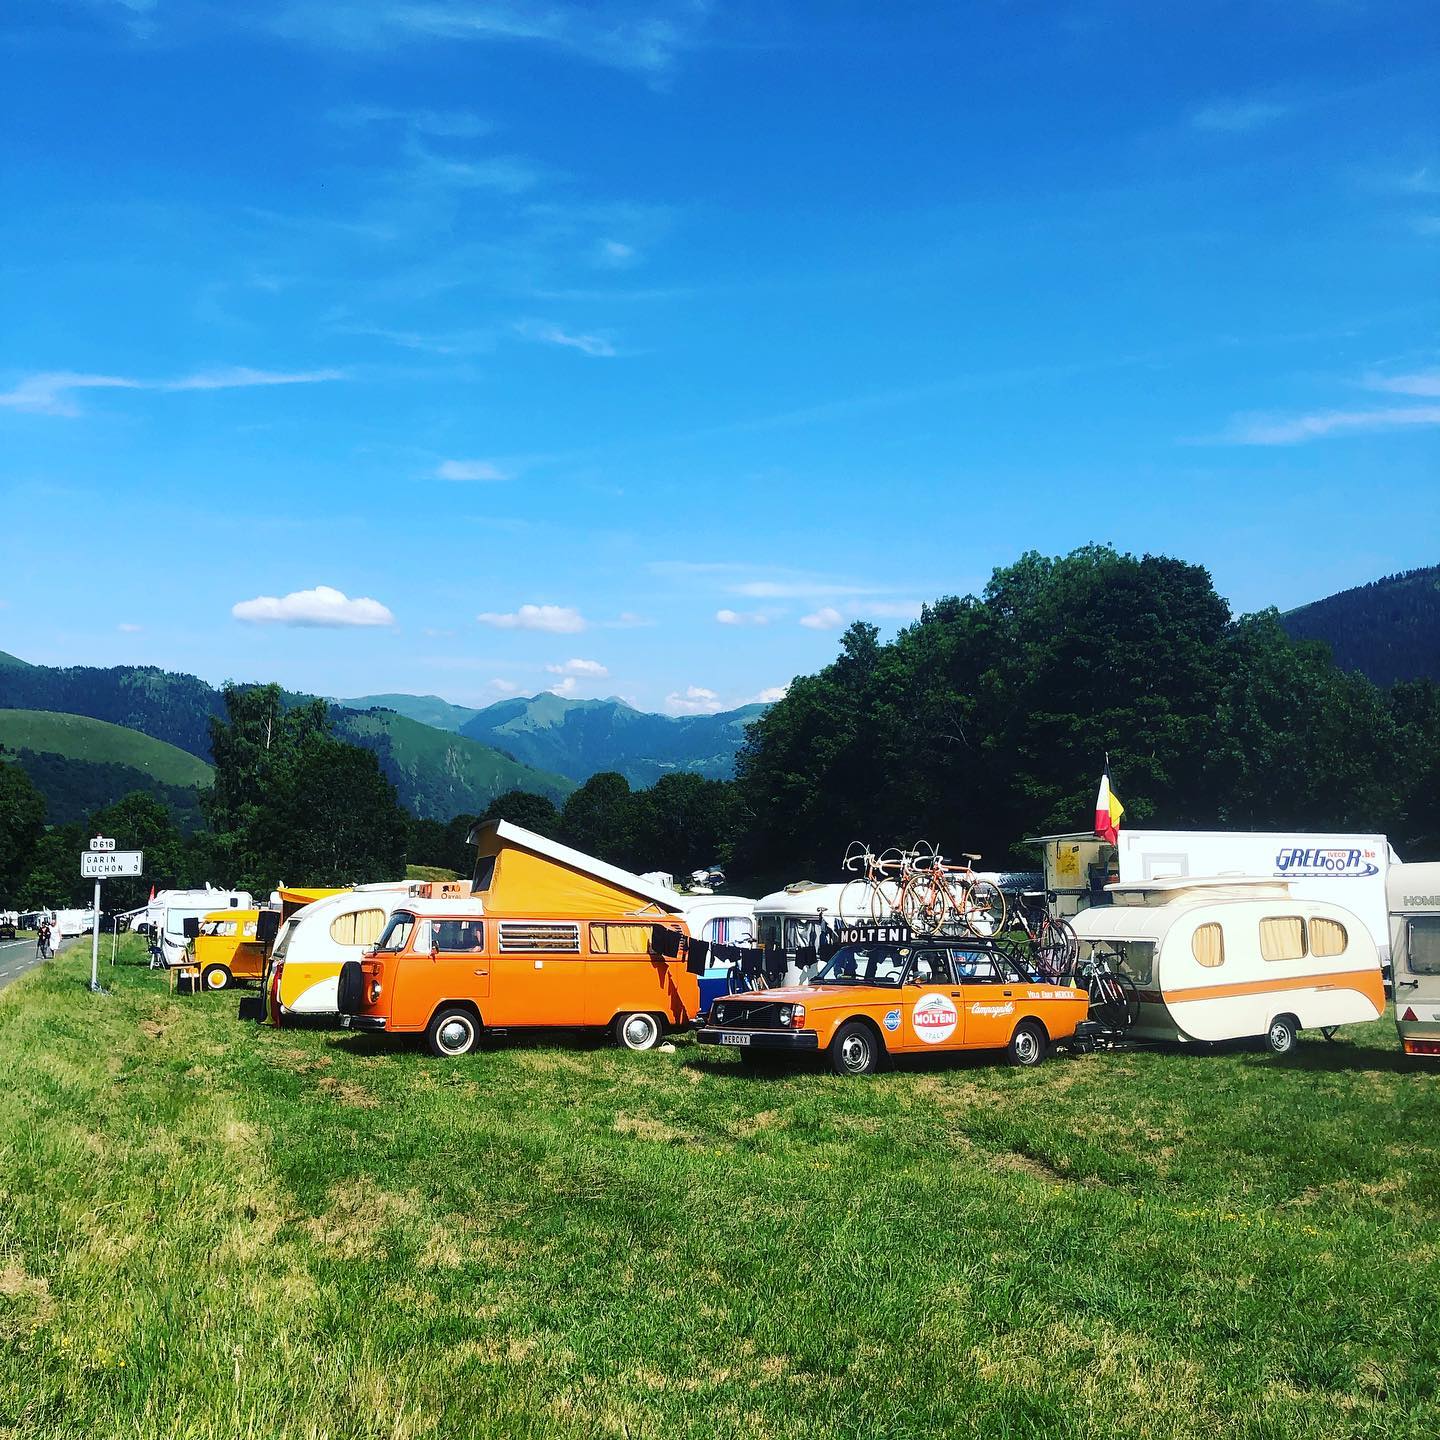 Campervans following the Tour de France